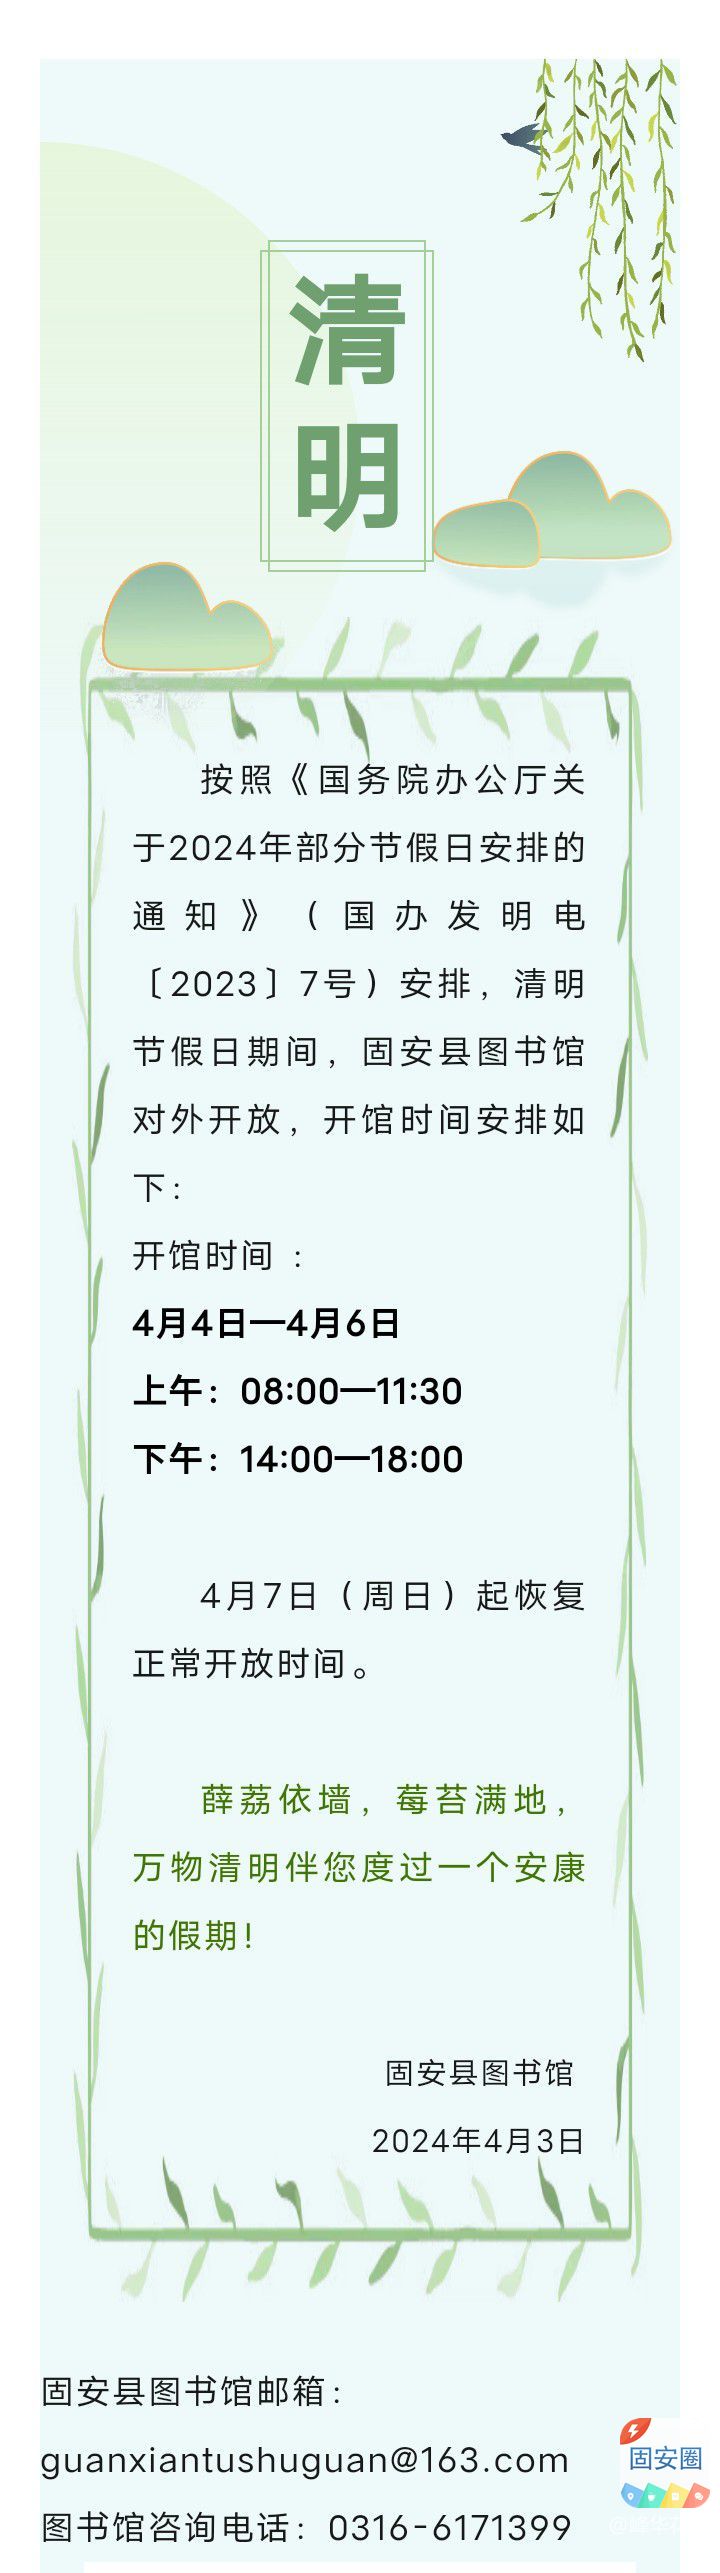 固安县图书馆2024年清明节开放安排1166 作者:峰华花园 帖子ID:297900 